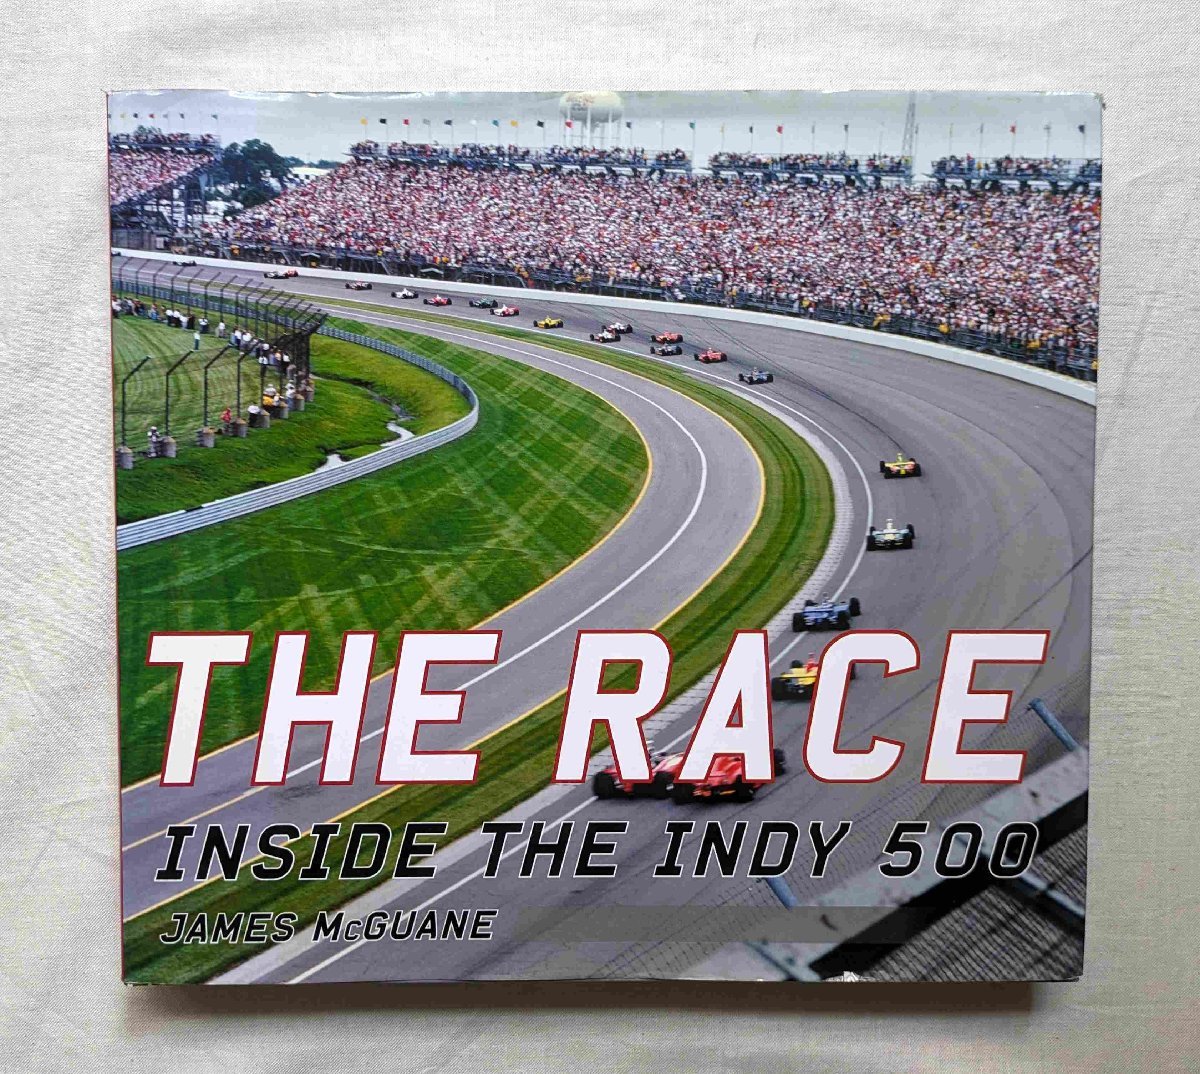  Indy 500 иностранная книга The Race Inside the Indy 500 Indy дыра Police 500 миля гонки / гоночный автомобиль / Motor Sport / спорт машина 